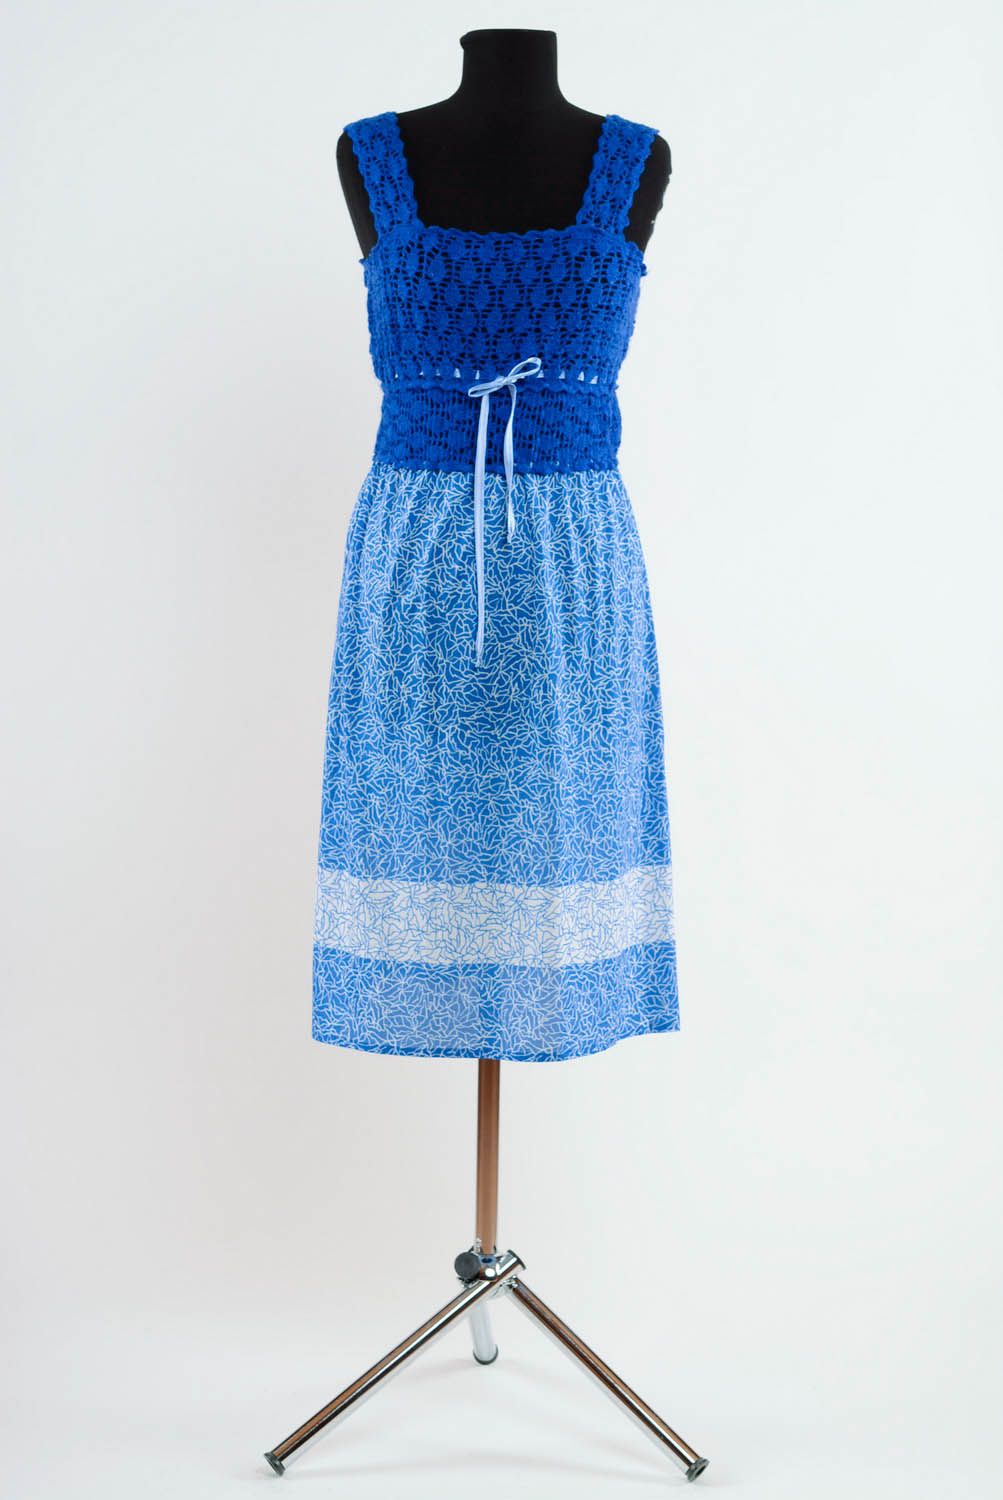 Robe bleue en acrylique et demi-laine faite main photo 1